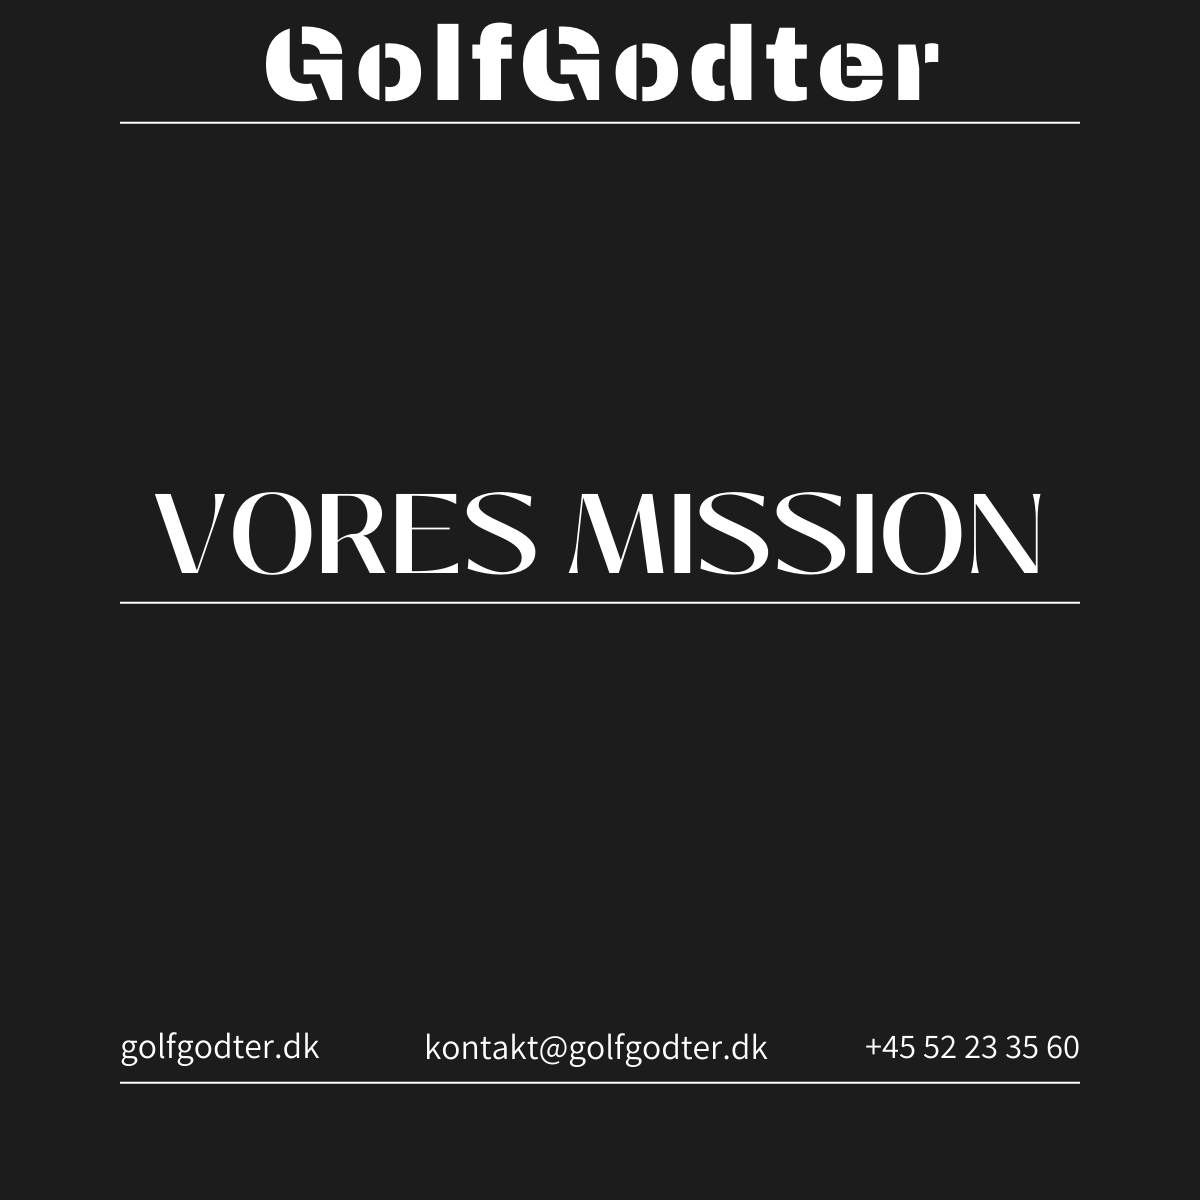 GolfGodter's mission